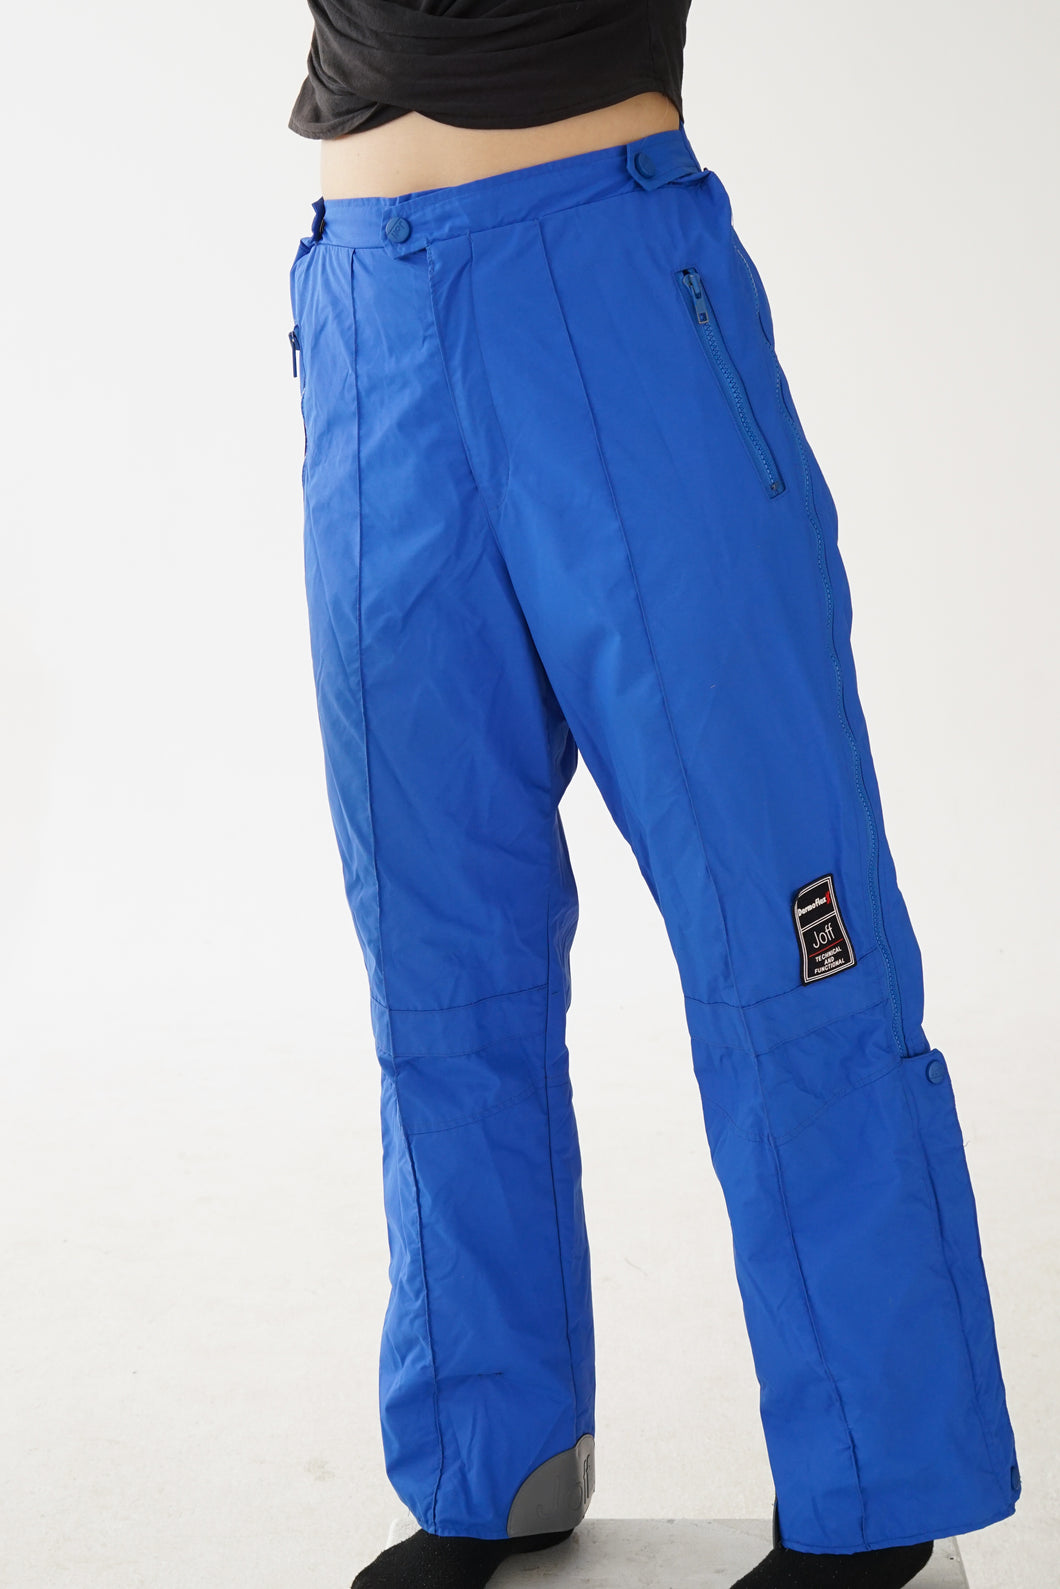 Pantalon de neige style hardshell Joff bleu royal pour homme taille 34